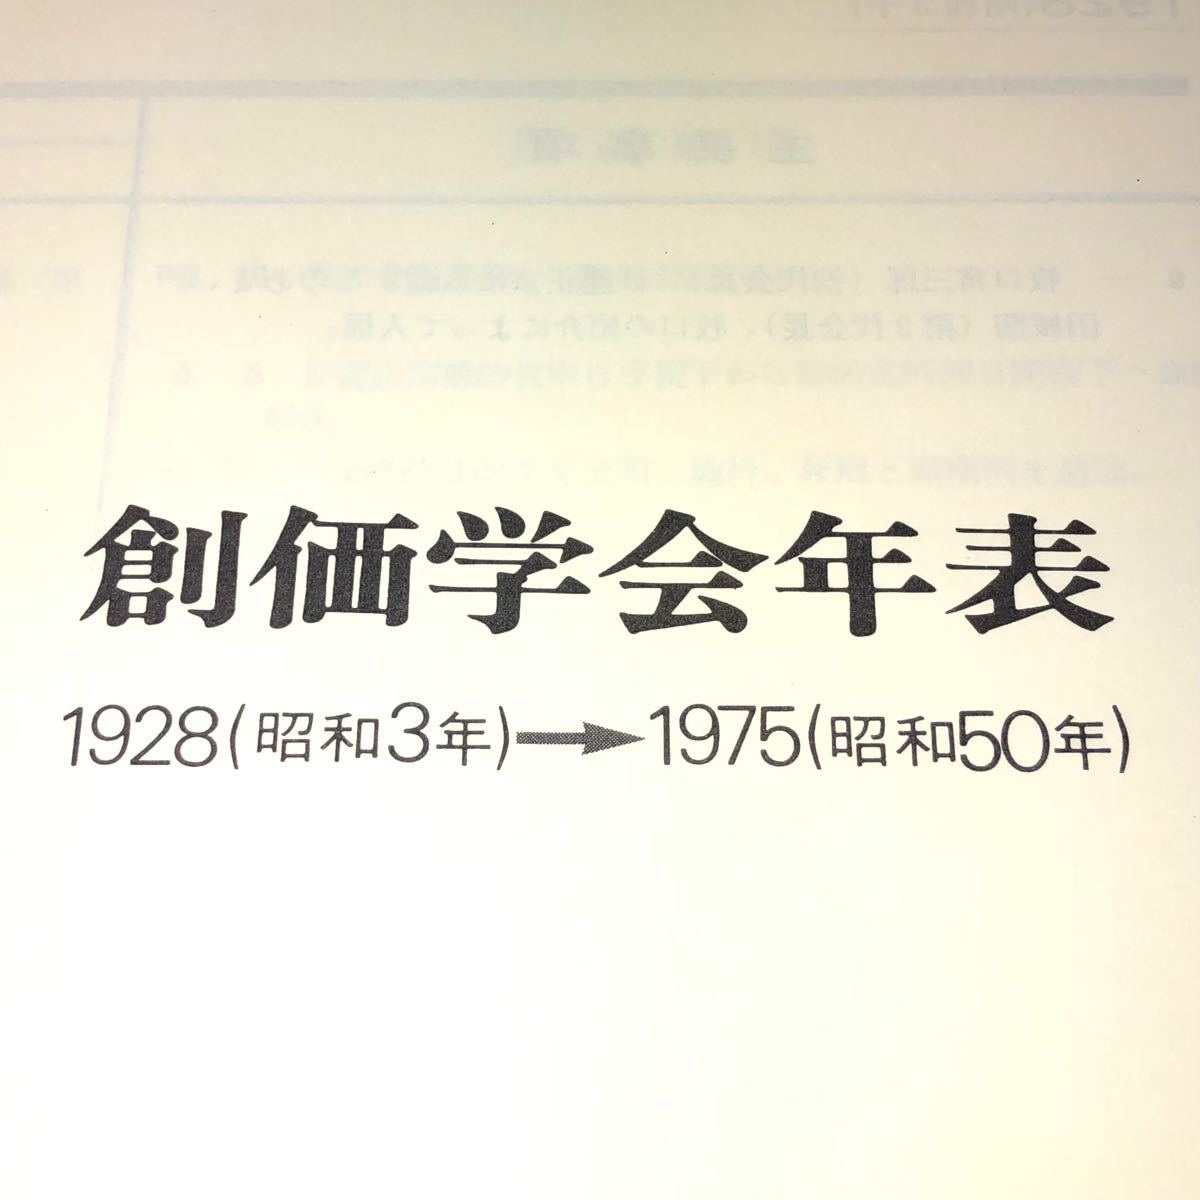 創価学会年表 1976年発行 牧口常三郎先生 戸田城聖先生 池田大作先生